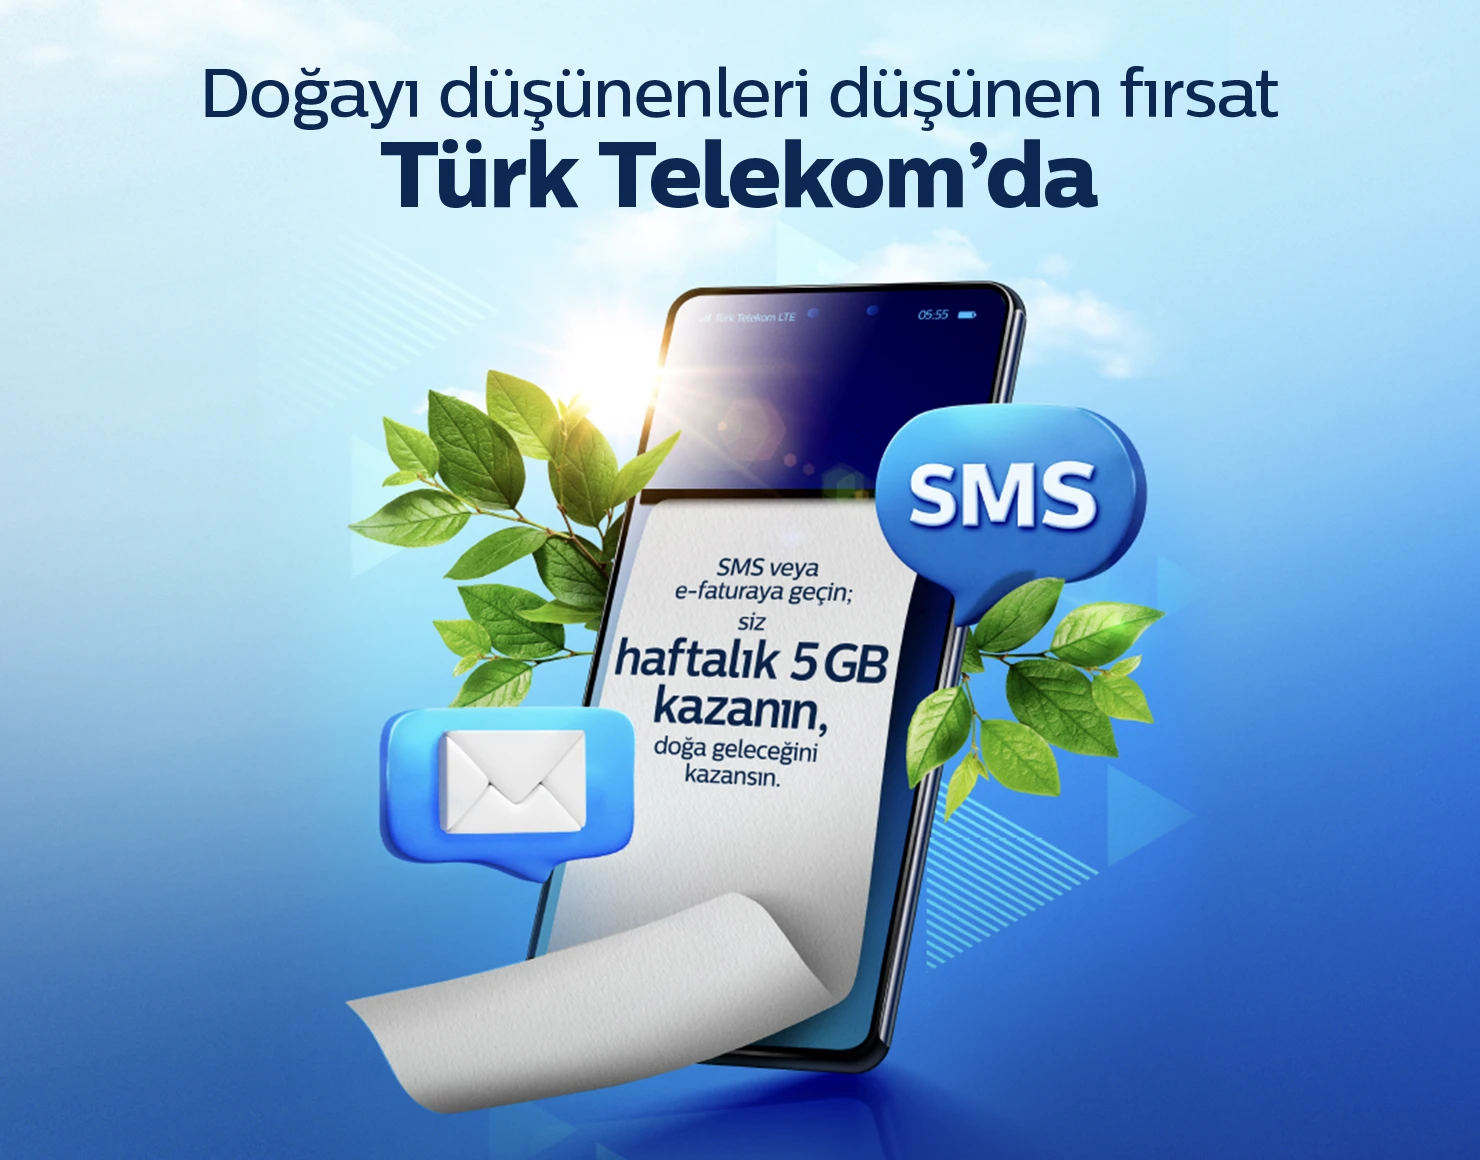 Mavi arka plan üzerinde Doğayı düşünenleri düşünen fırsat türk telekomda yazısının yanında bir telefon ve etrafında yapraklar 